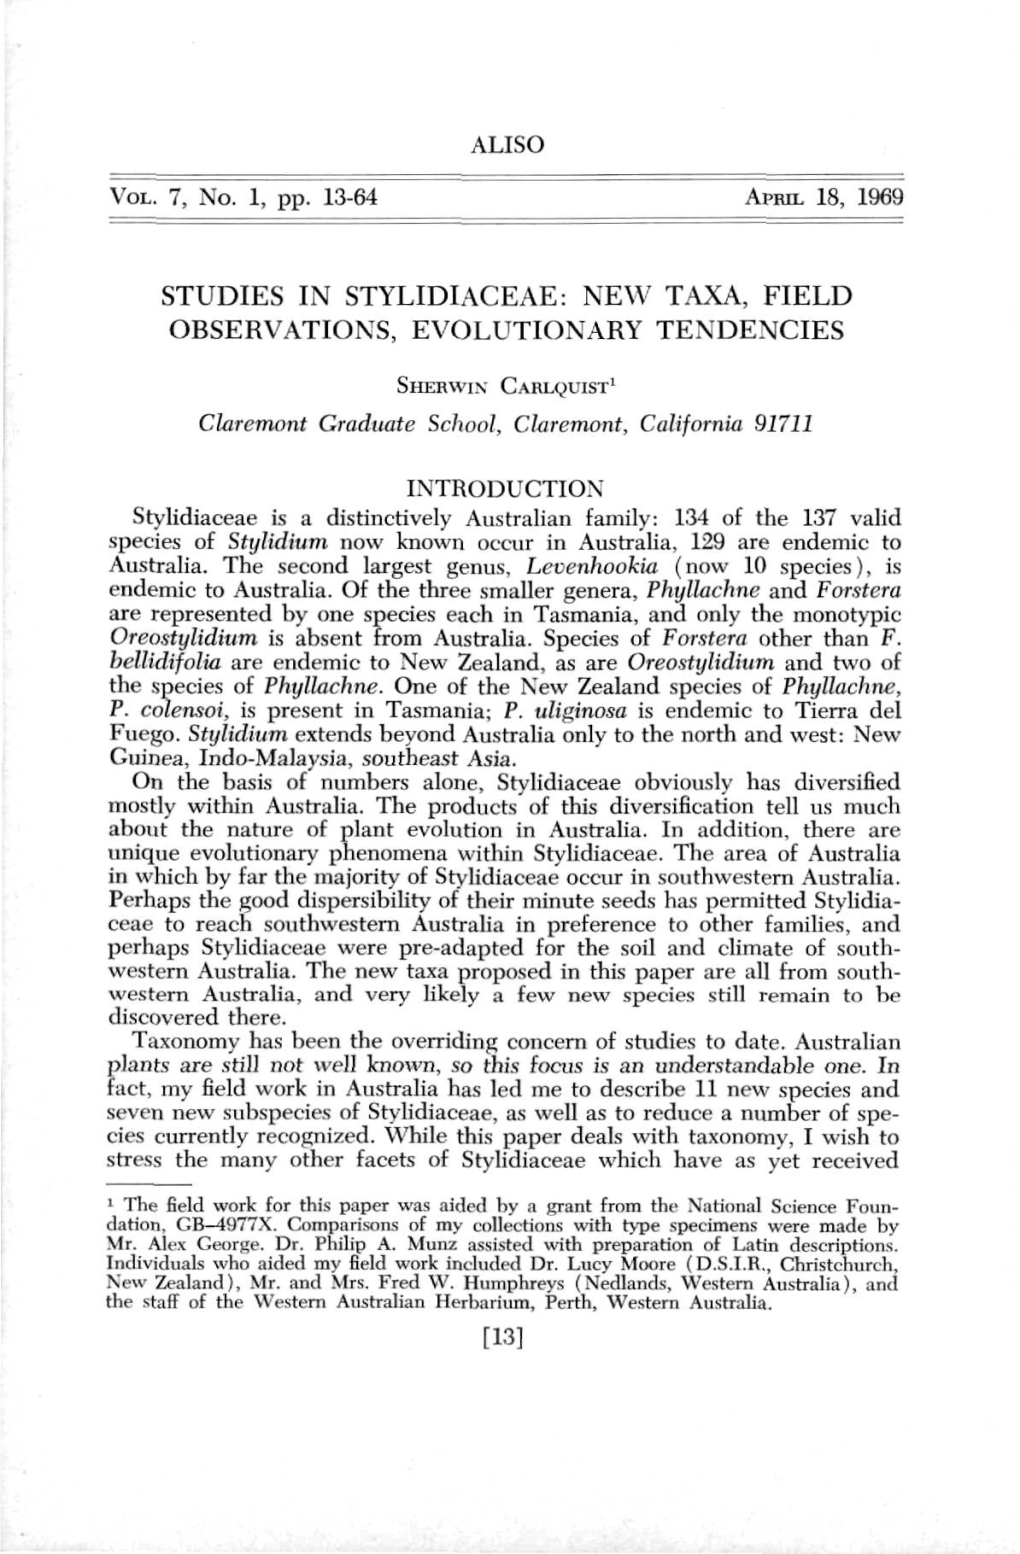 Aliso Studies in Stylidiaceae